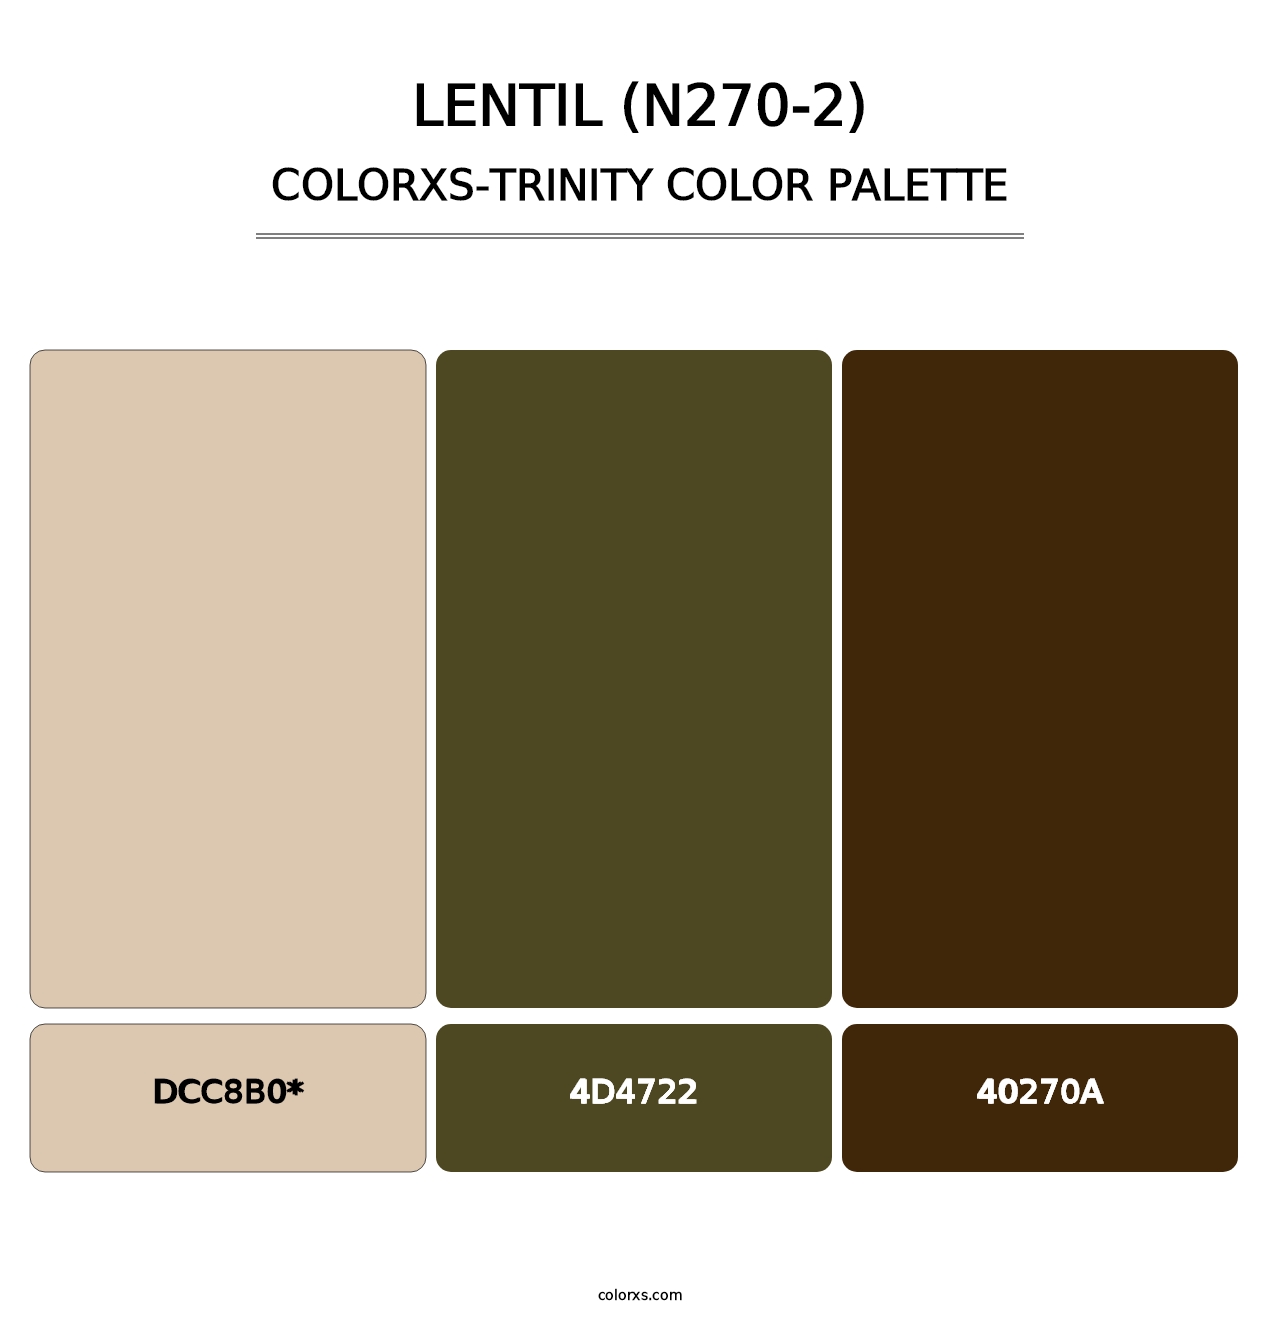 Lentil (N270-2) - Colorxs Trinity Palette